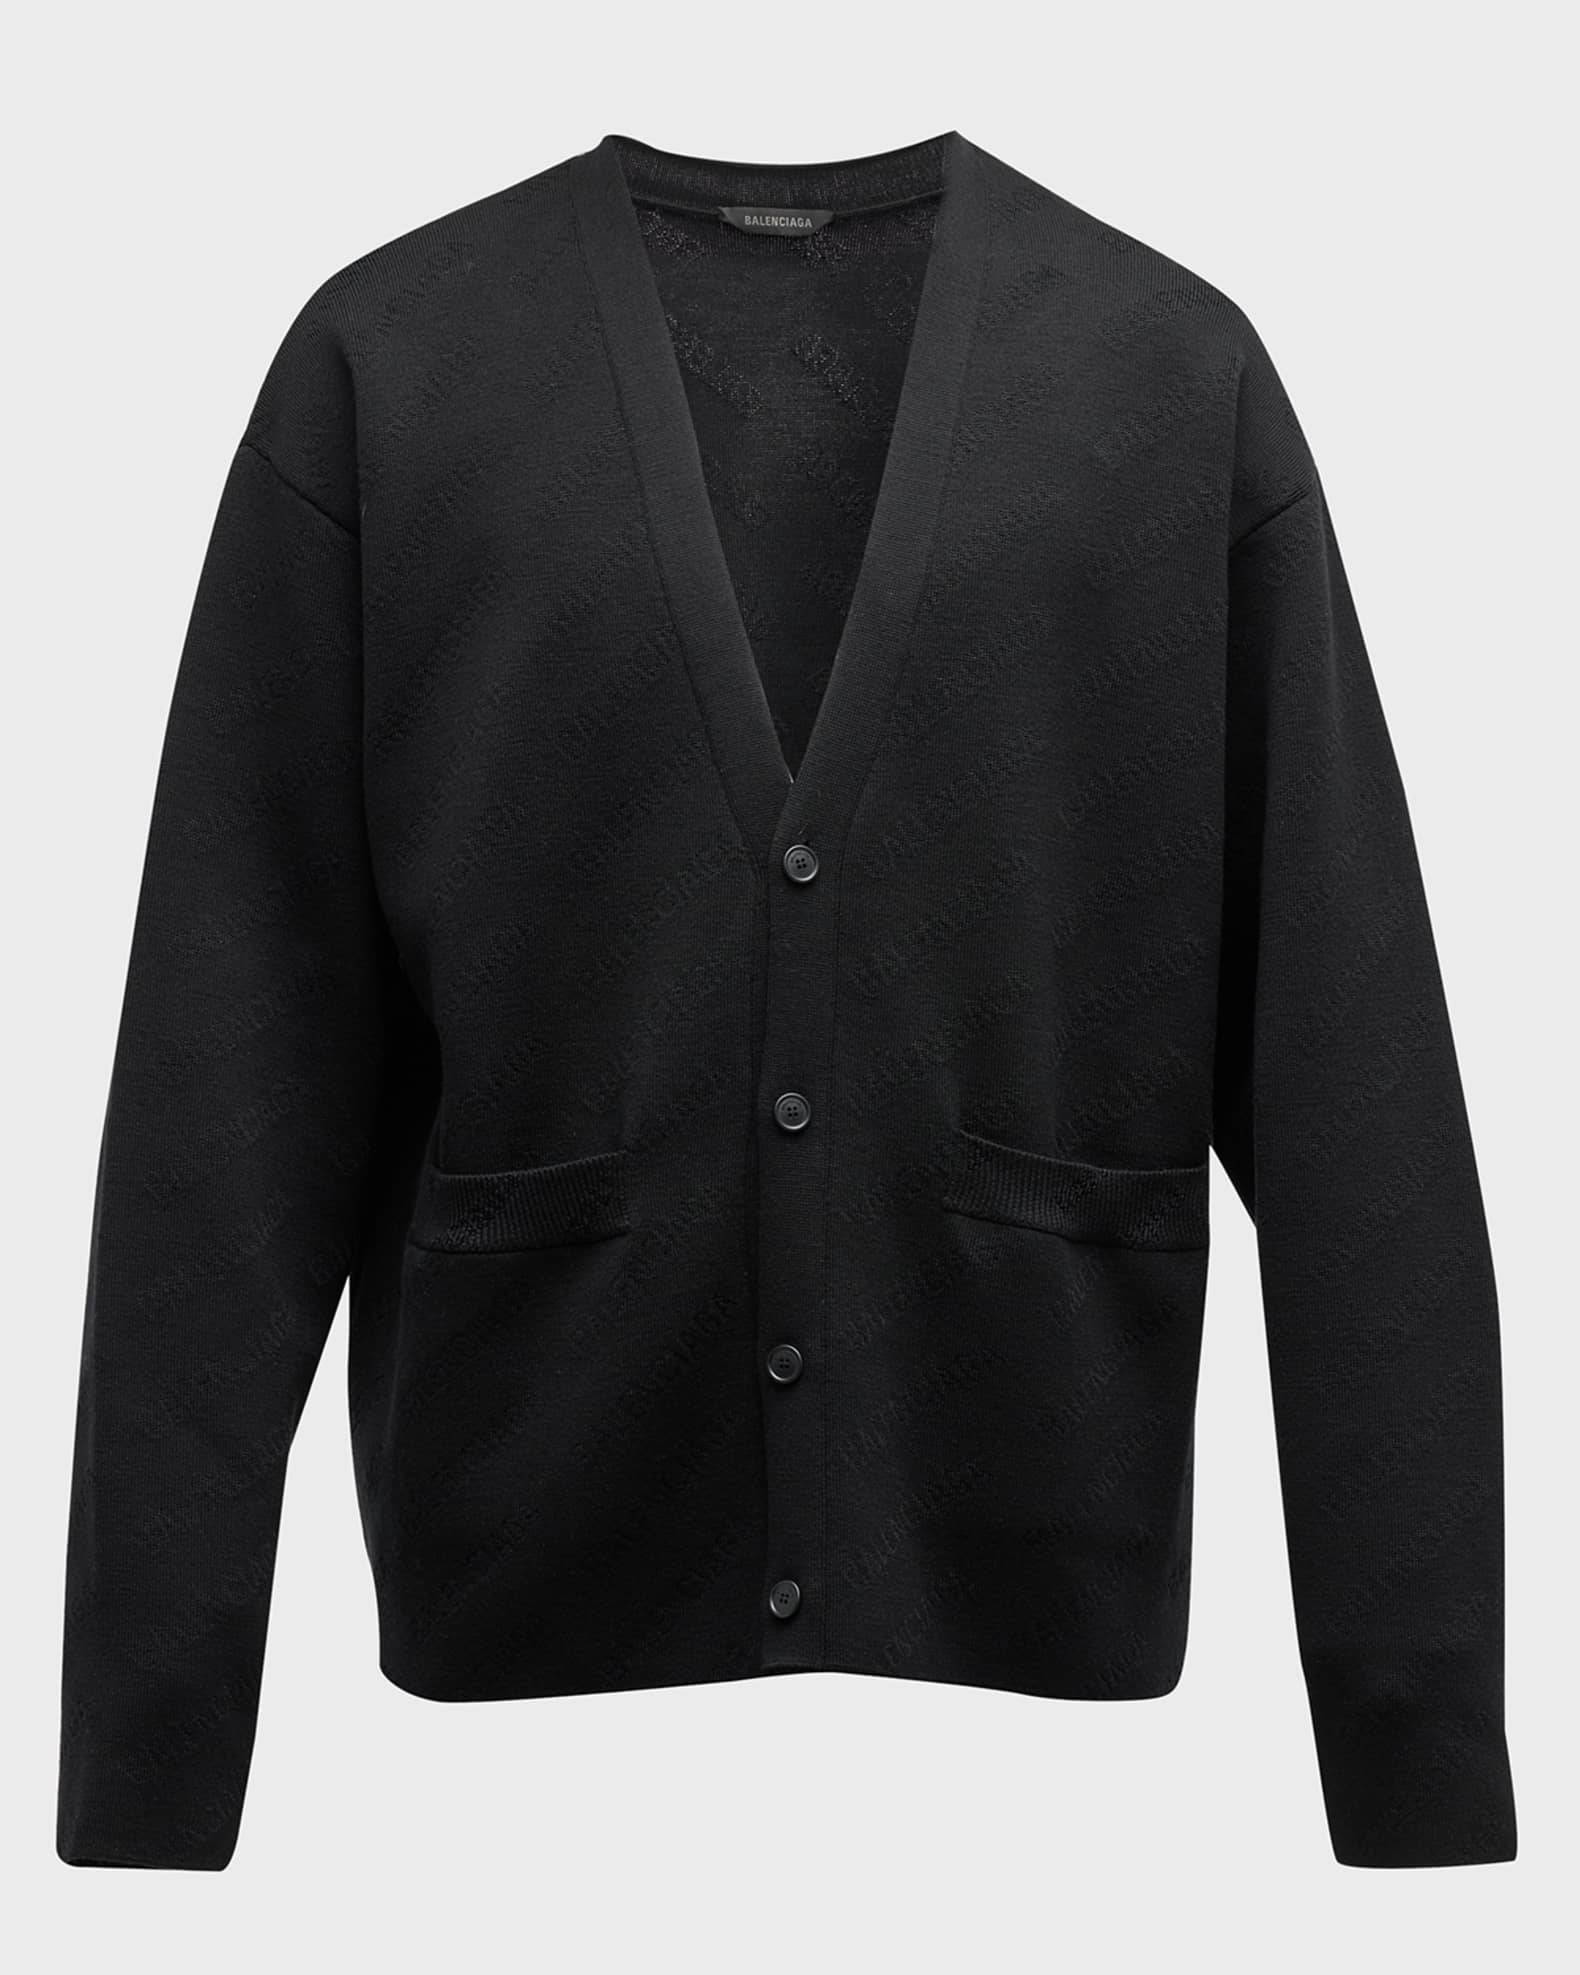 Balenciaga Men's Allover Tonal Logo Cardigan Sweater | Neiman Marcus